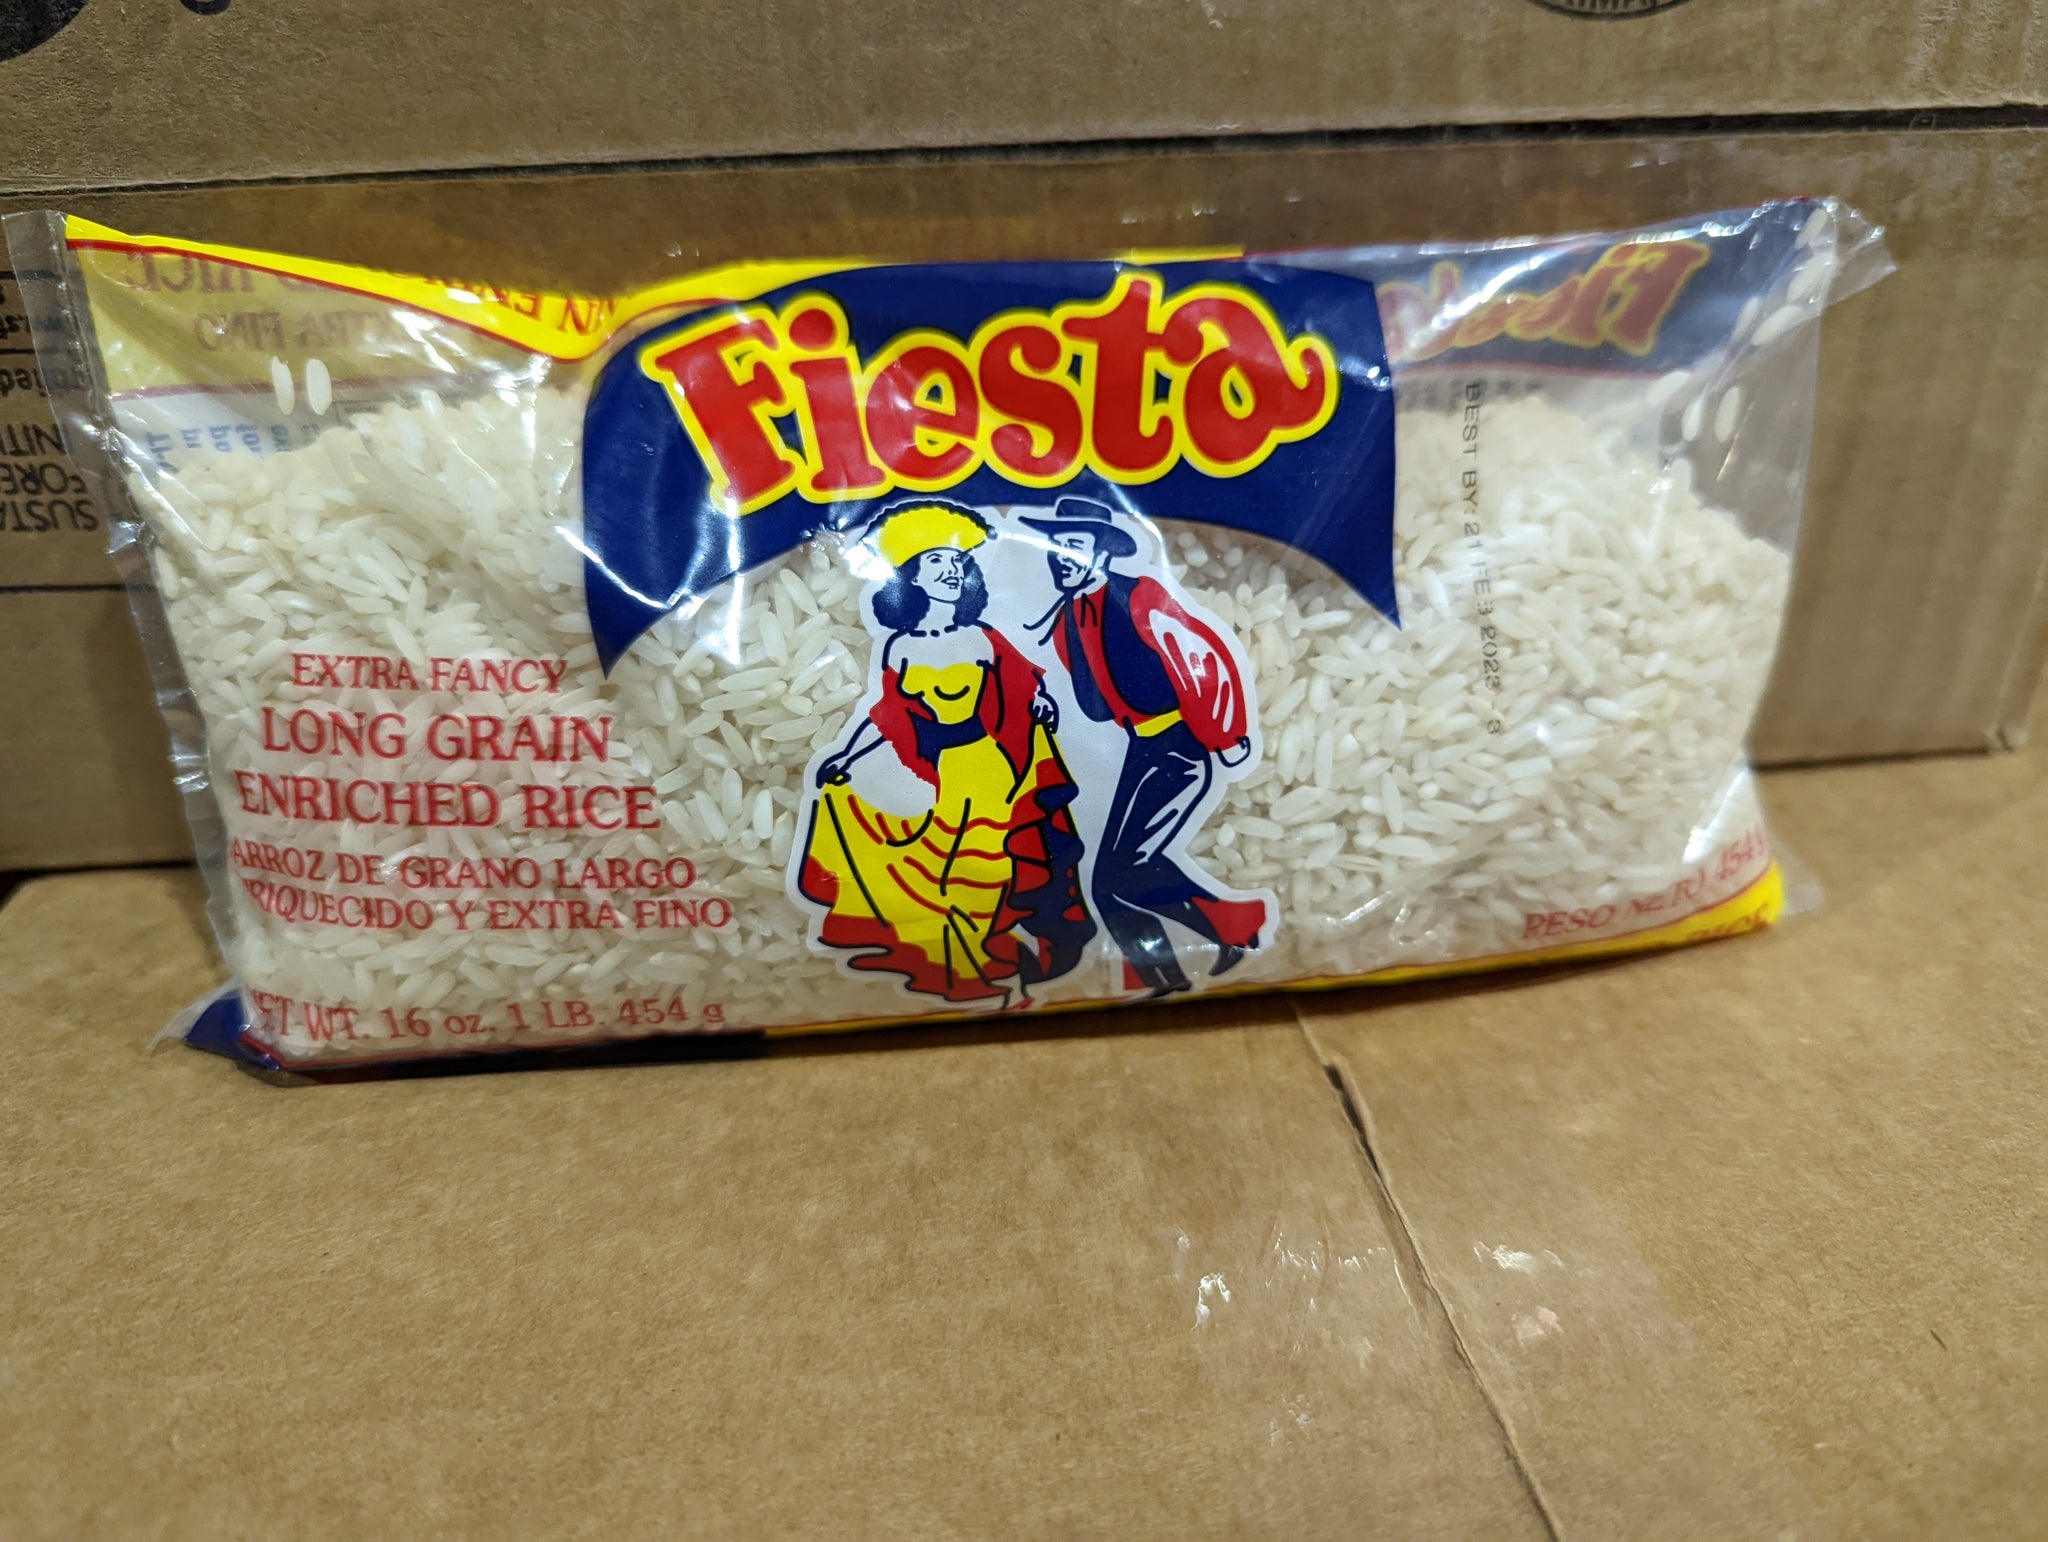 La Fiesta Arroz (Rice) 12/1lb (ND)